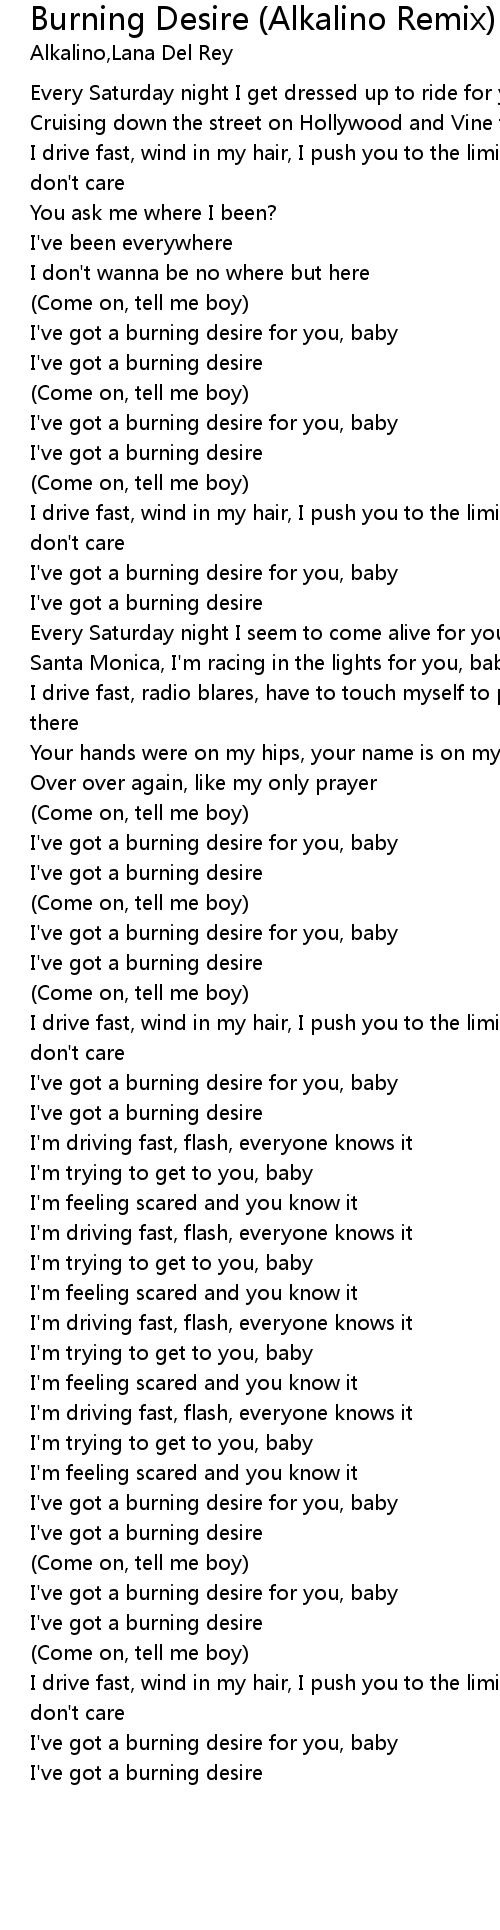 Burning Desire (Alkalino Remix) Lyrics - Follow Lyrics